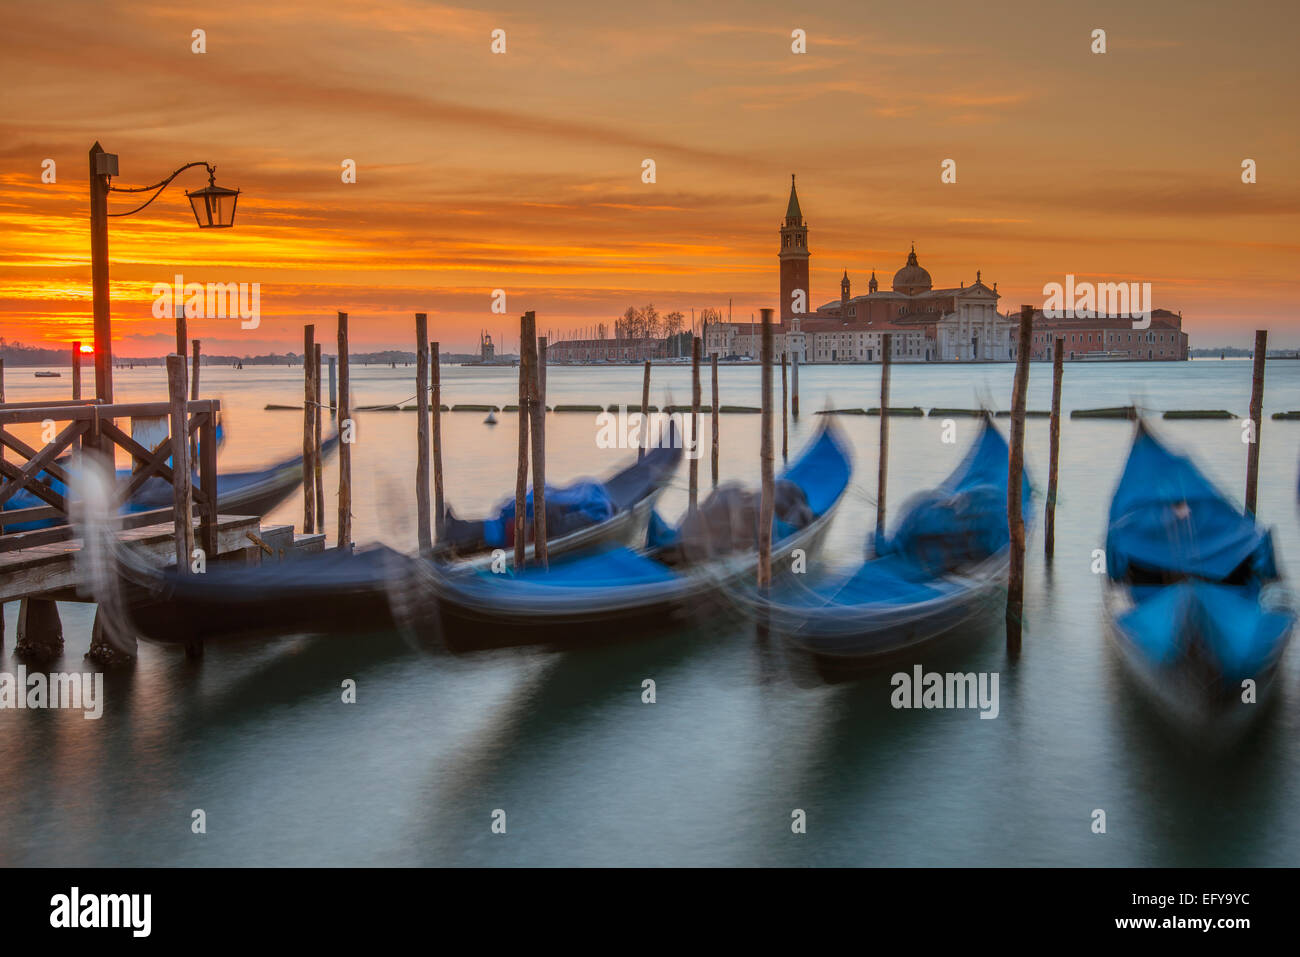 Moored gondolas with San Giorgio Maggiore island in the background at dawn, Venice, Veneto, Italy Stock Photo